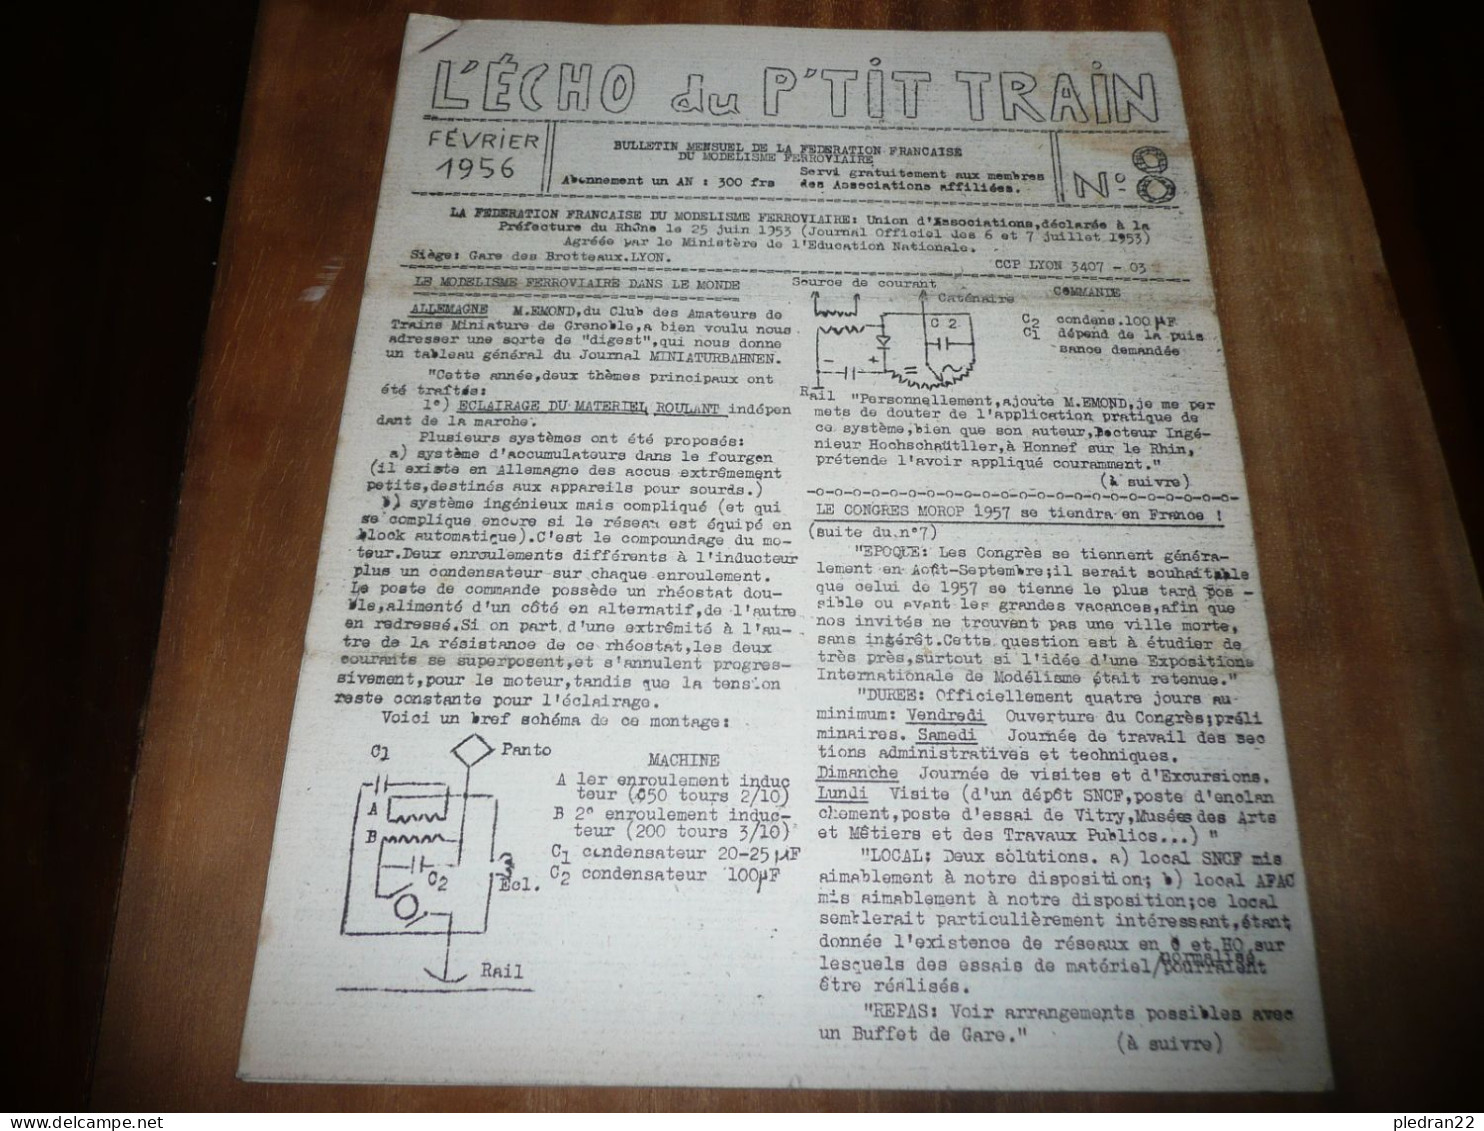 CHEMINS DE FER REVUE L'ECHO DU P'TIT TRAIN N° 8 FEVRIER 1956 MODELISME FERROVIAIRE GARE DES BROTTEAUX LYON - Railway & Tramway